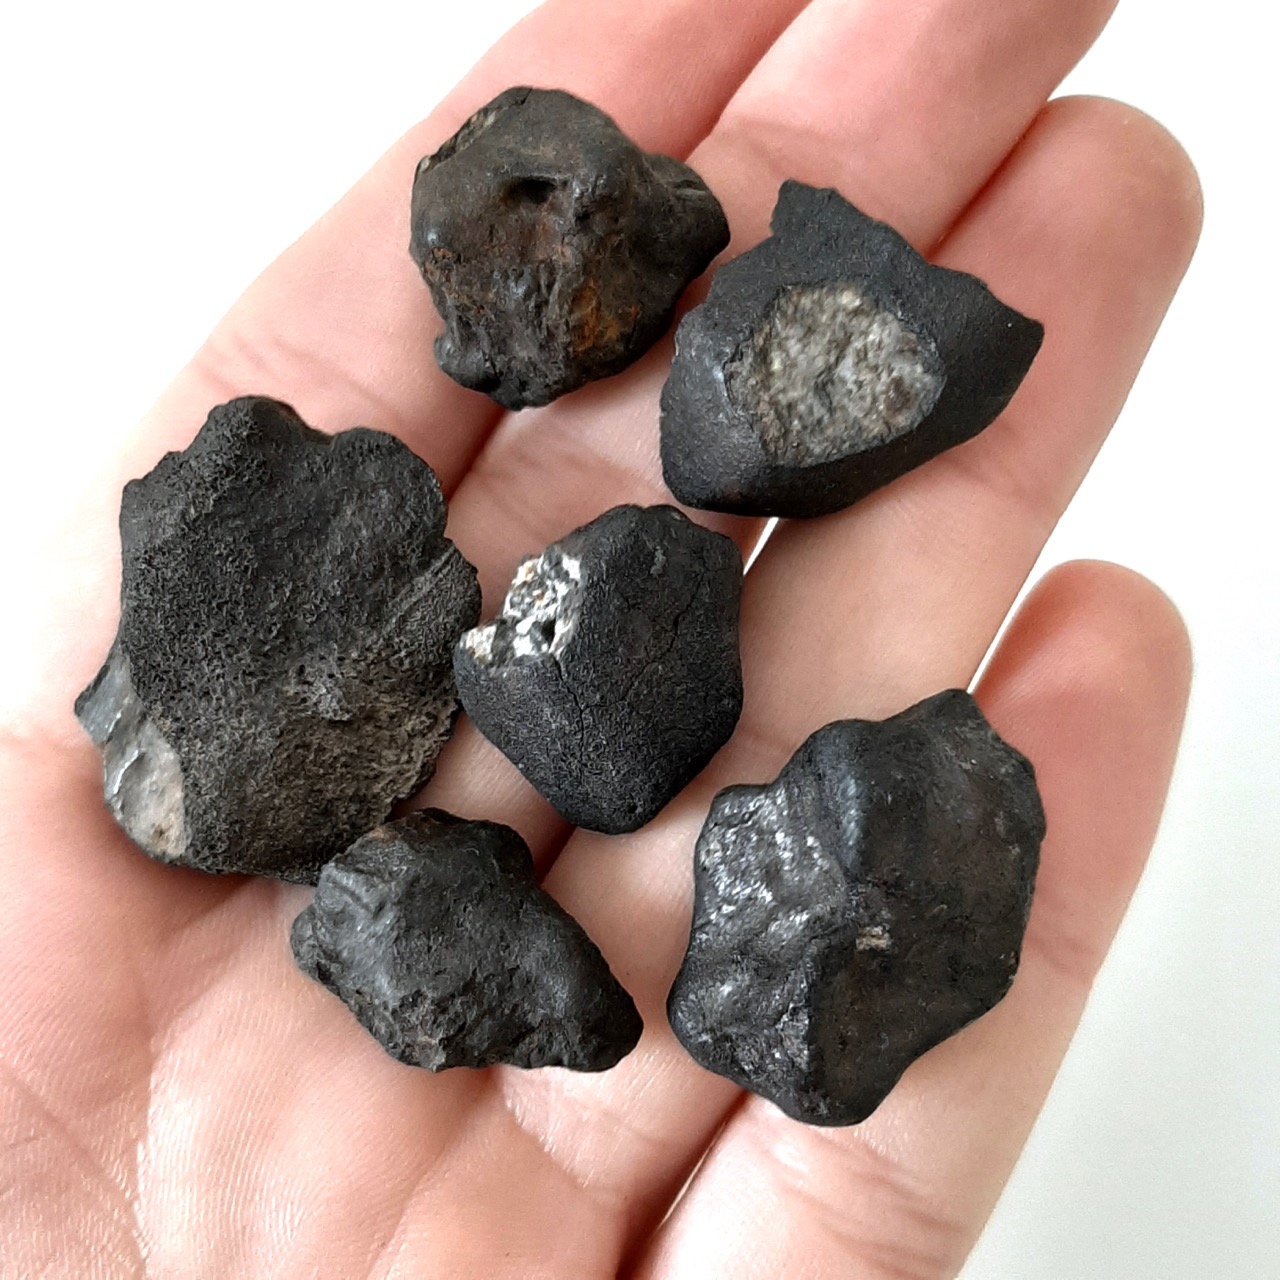 Chelyabinsk meteorite. Famous observed fall. Lot.